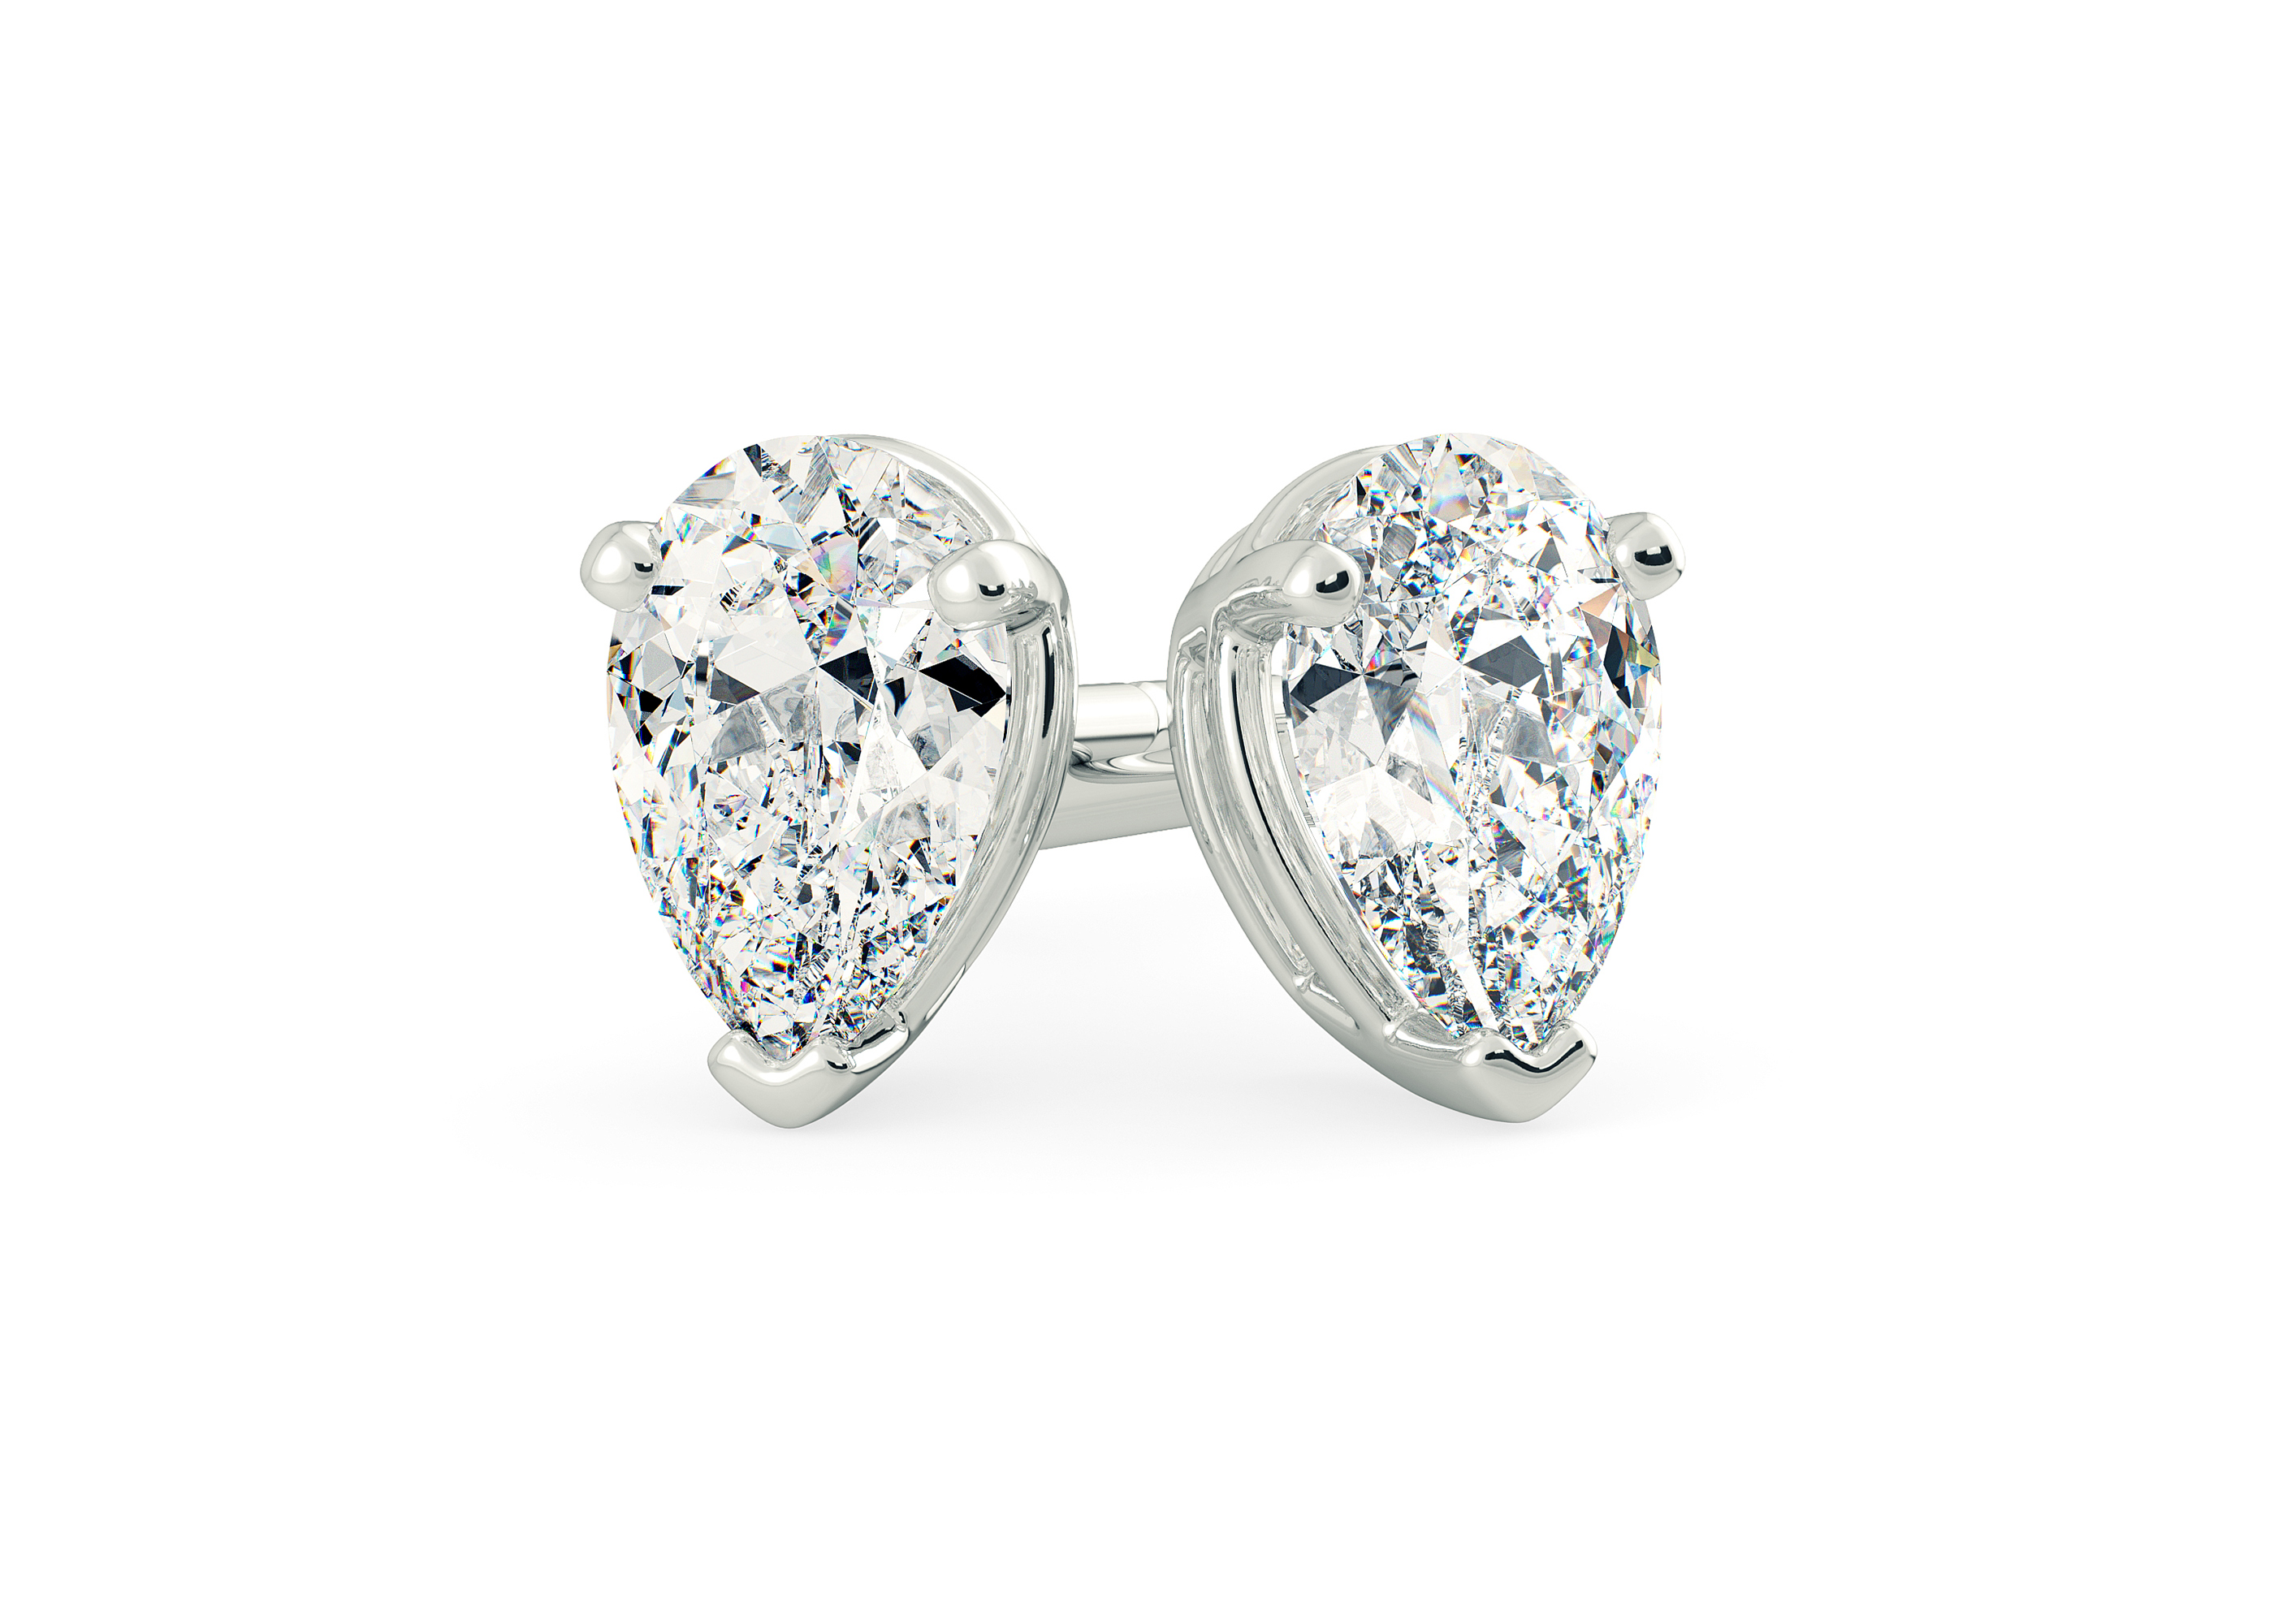 Half Carat Pear Diamond Stud Earrings in 9K White Gold